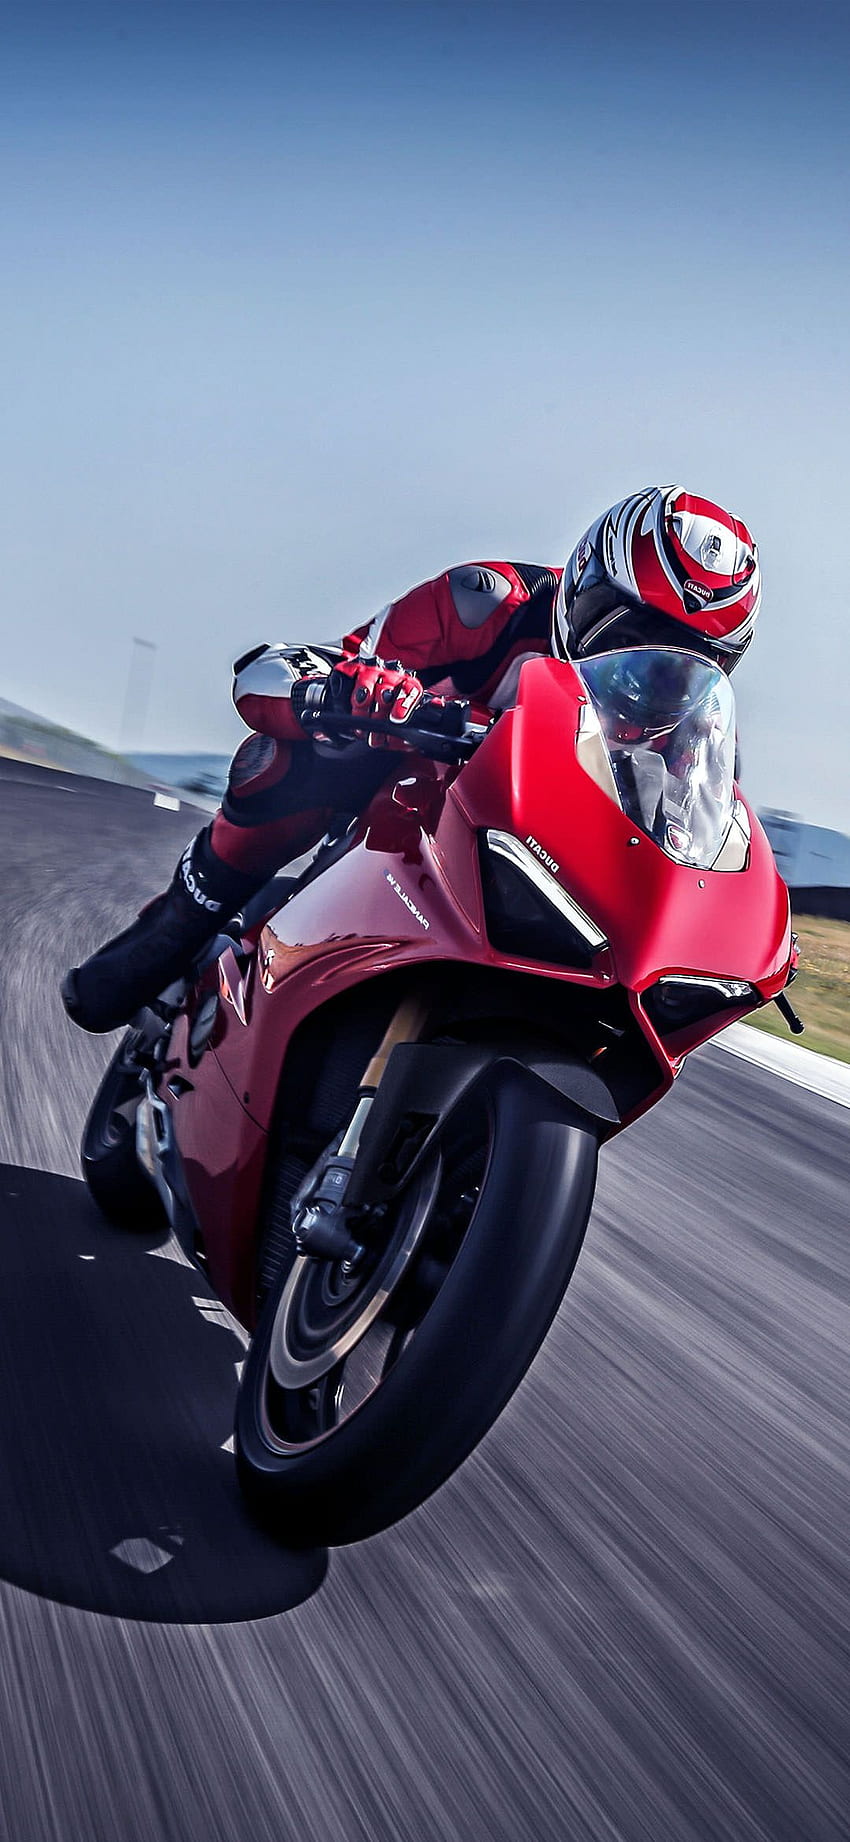 4K Wallpaper of 2019 Ducati Diavel 1260 S Bike | HD Wallpapers